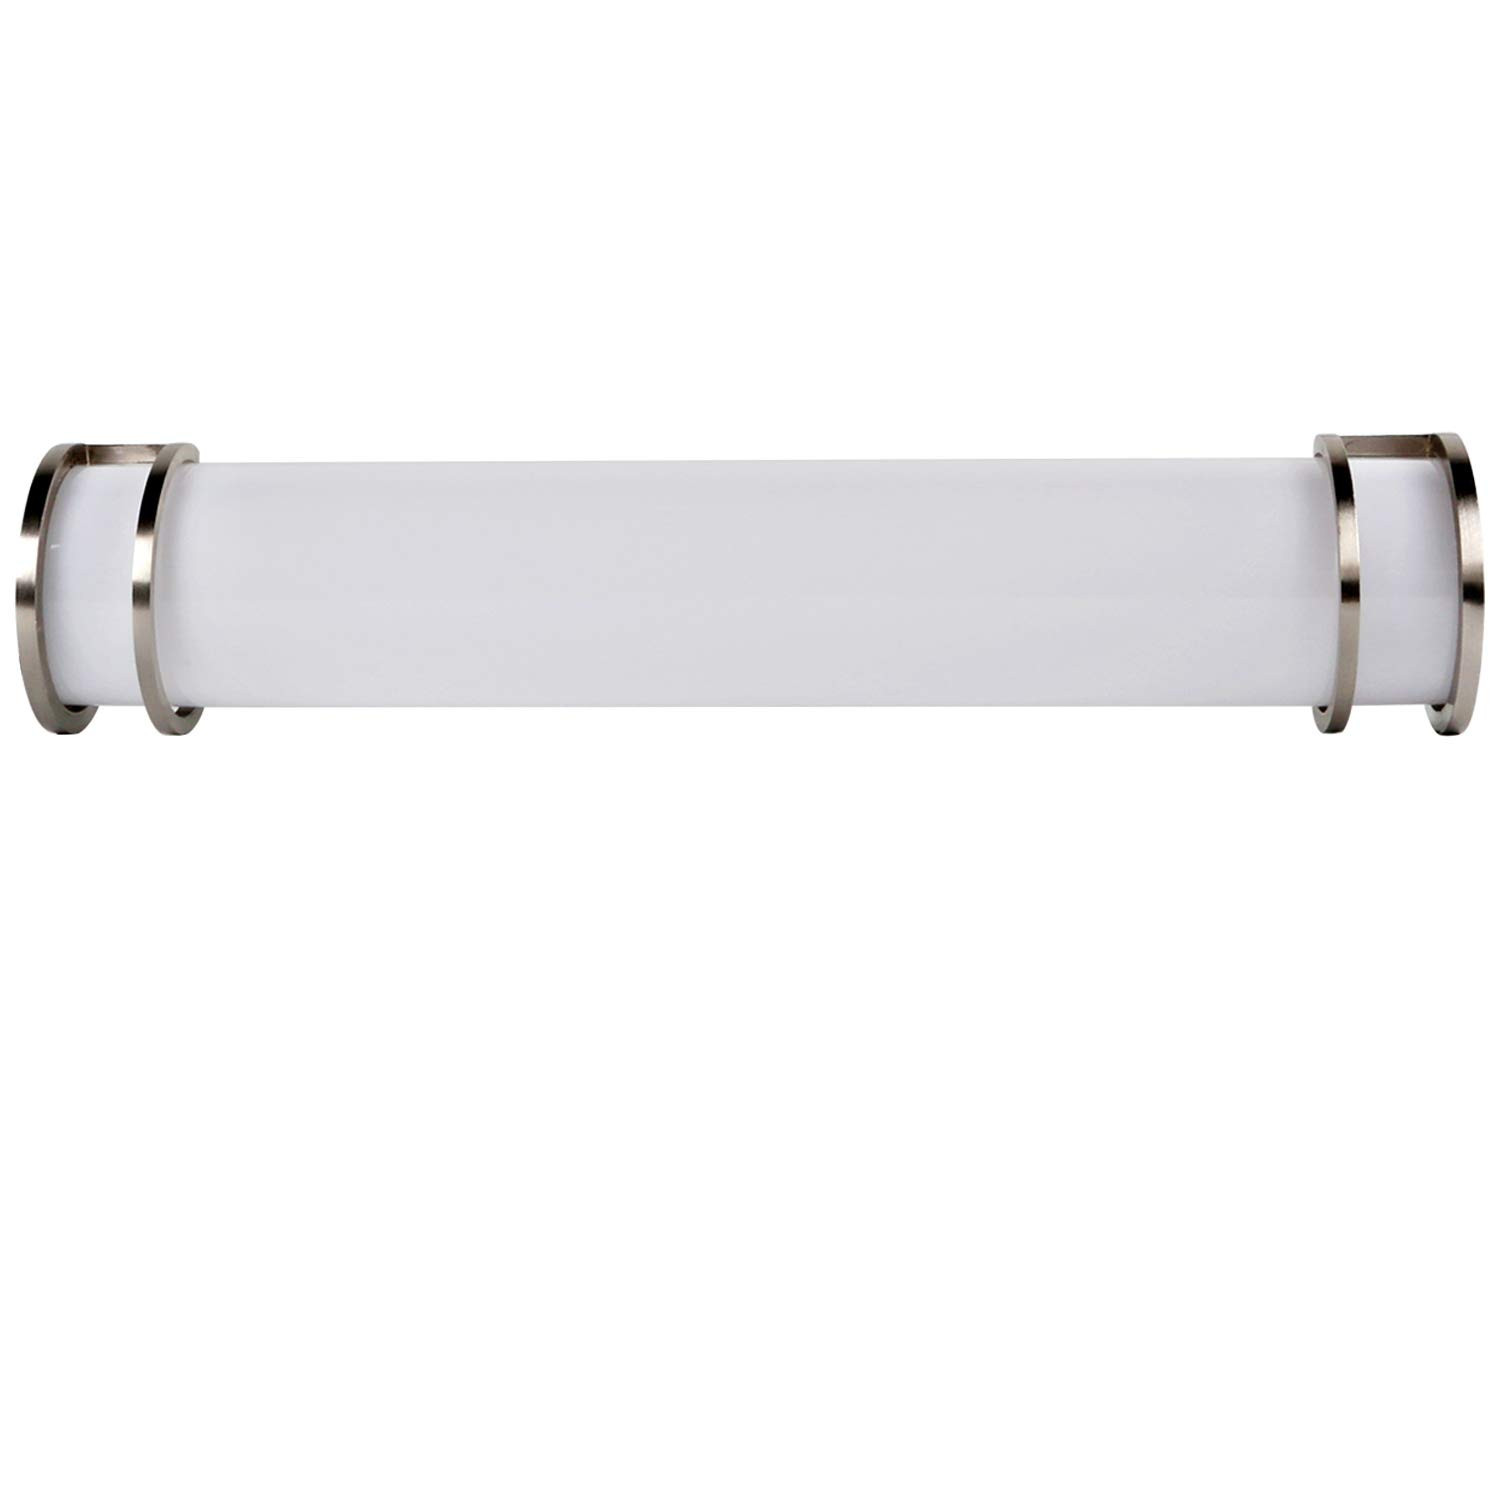 Led Bathroom Light Bars
 Hykolity 36 inch 28W Integrated LED Linear Vanity Light